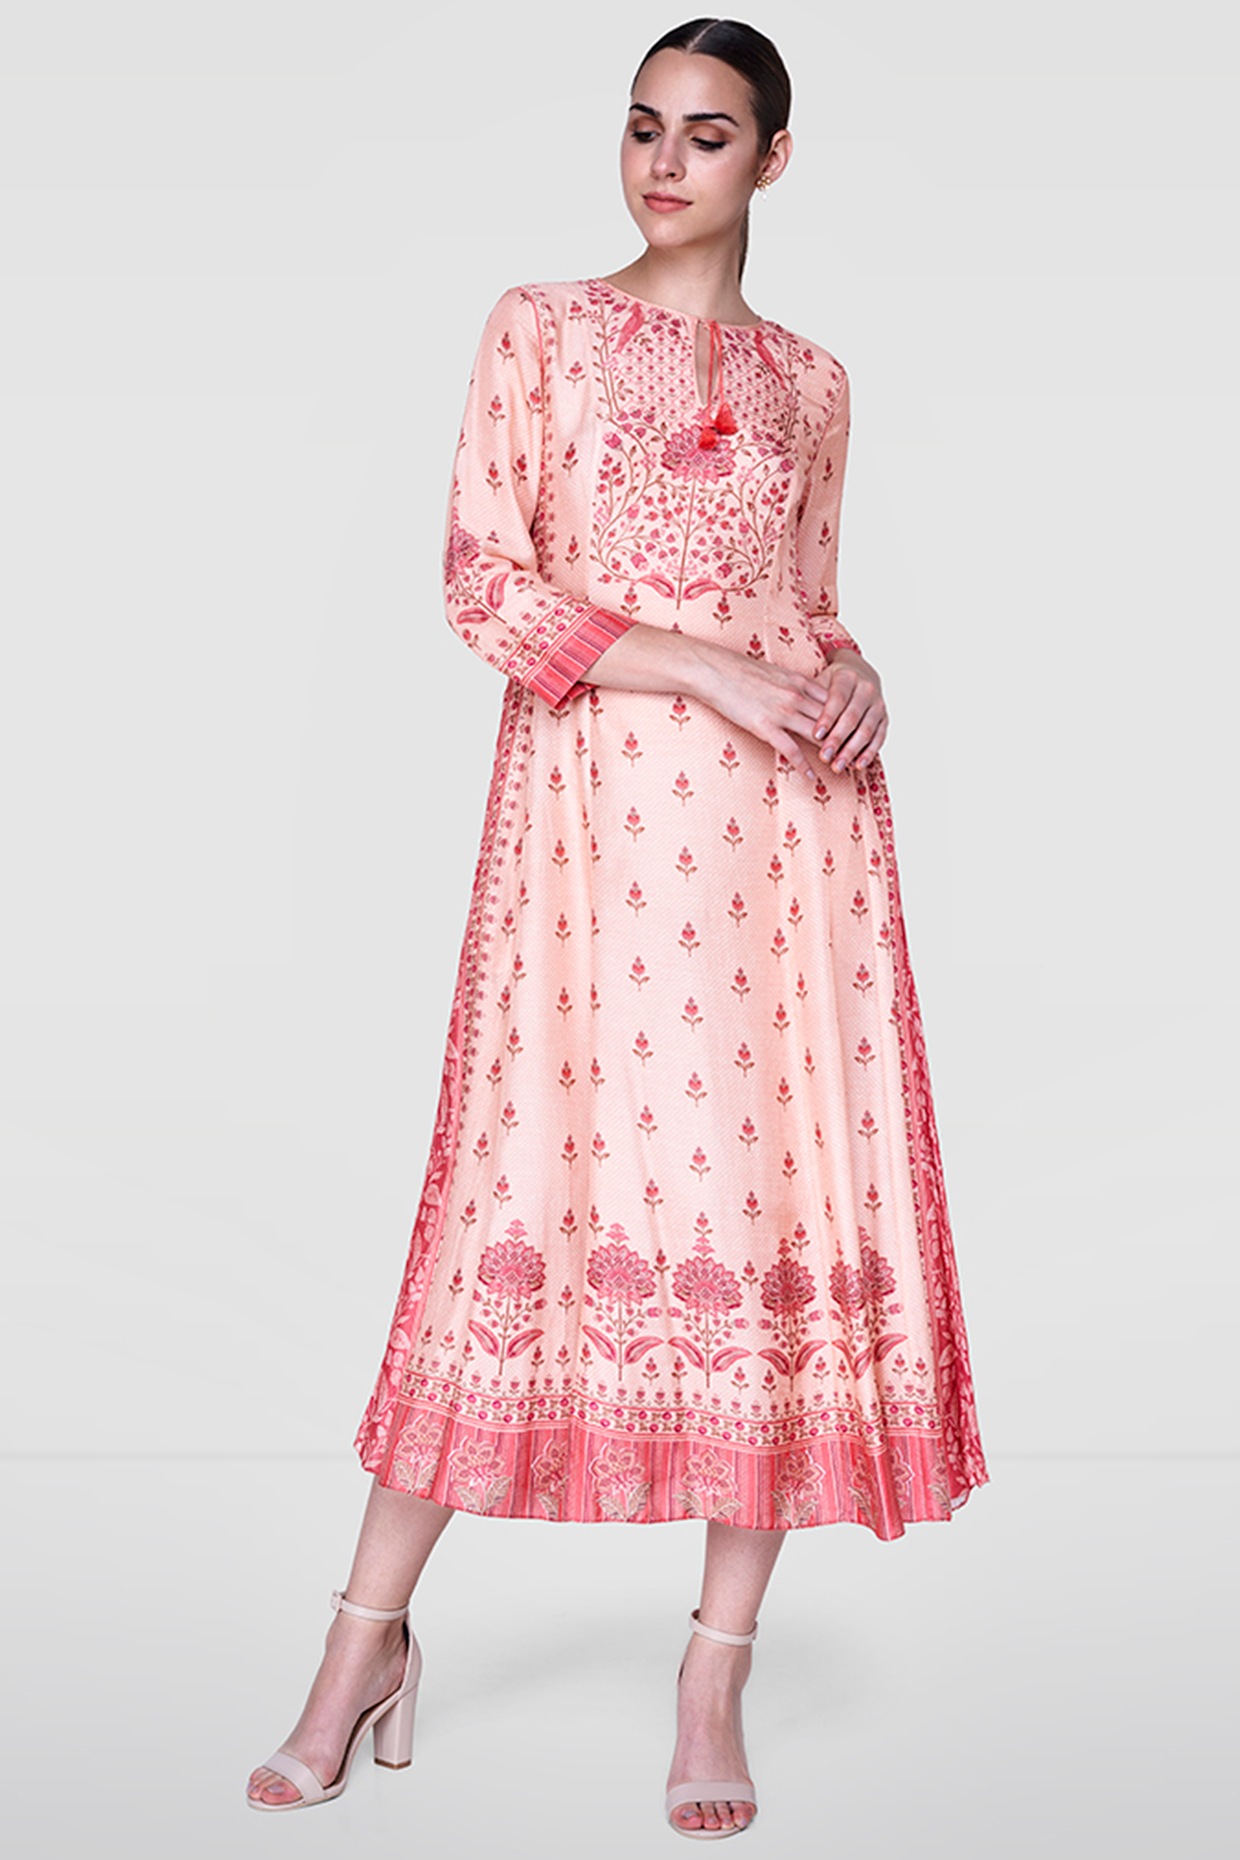 pink midi floral dress